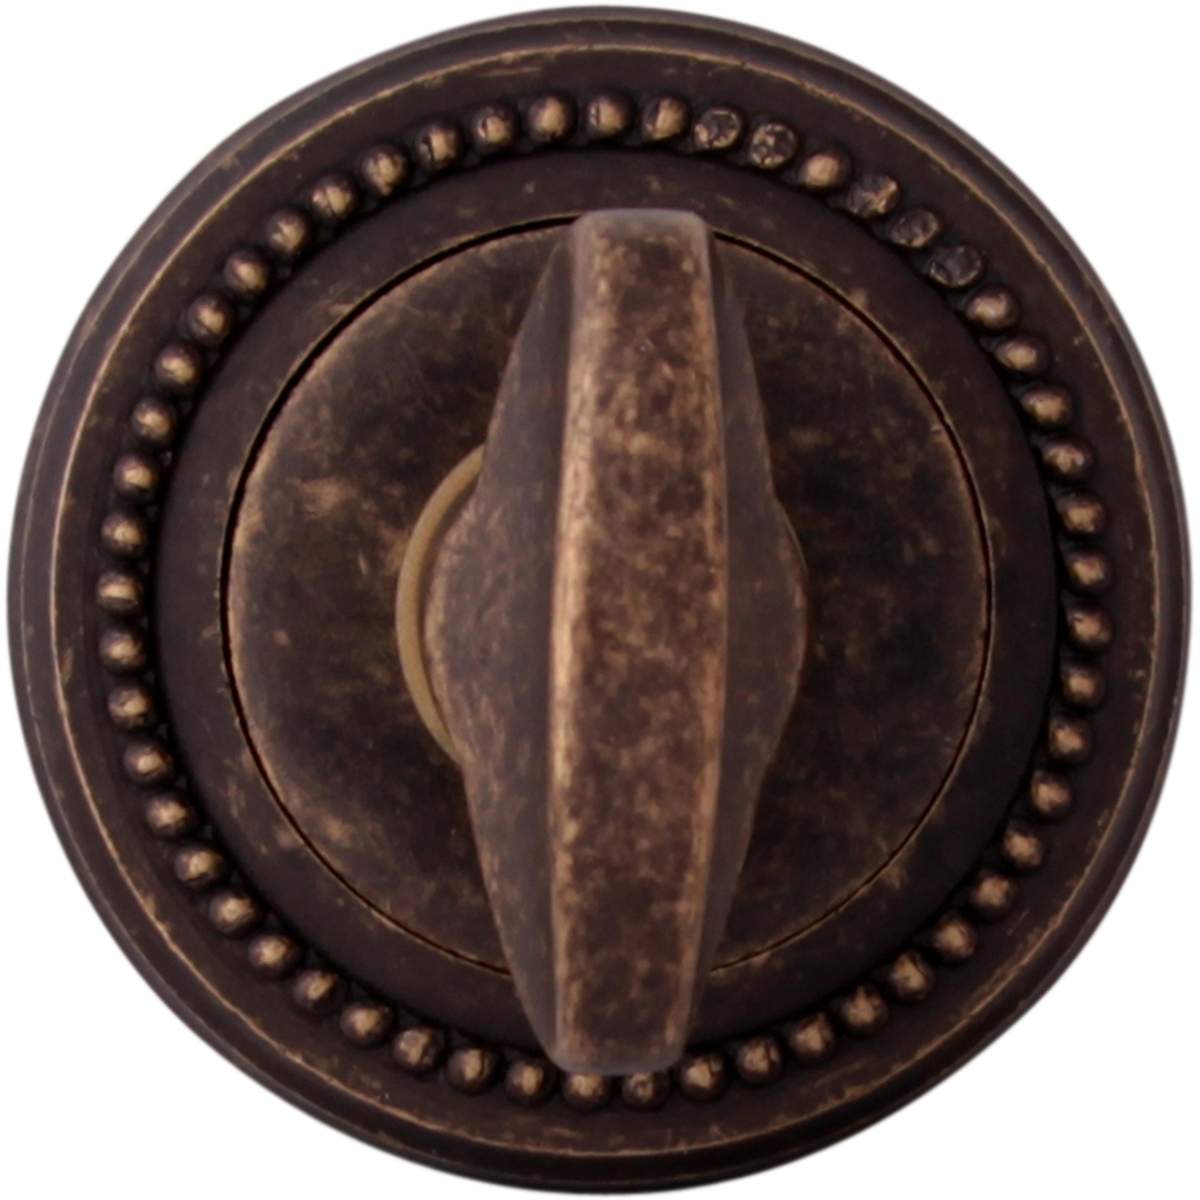 Дверная ручка на розетке Накладка Wc на розетке L Античная бронза